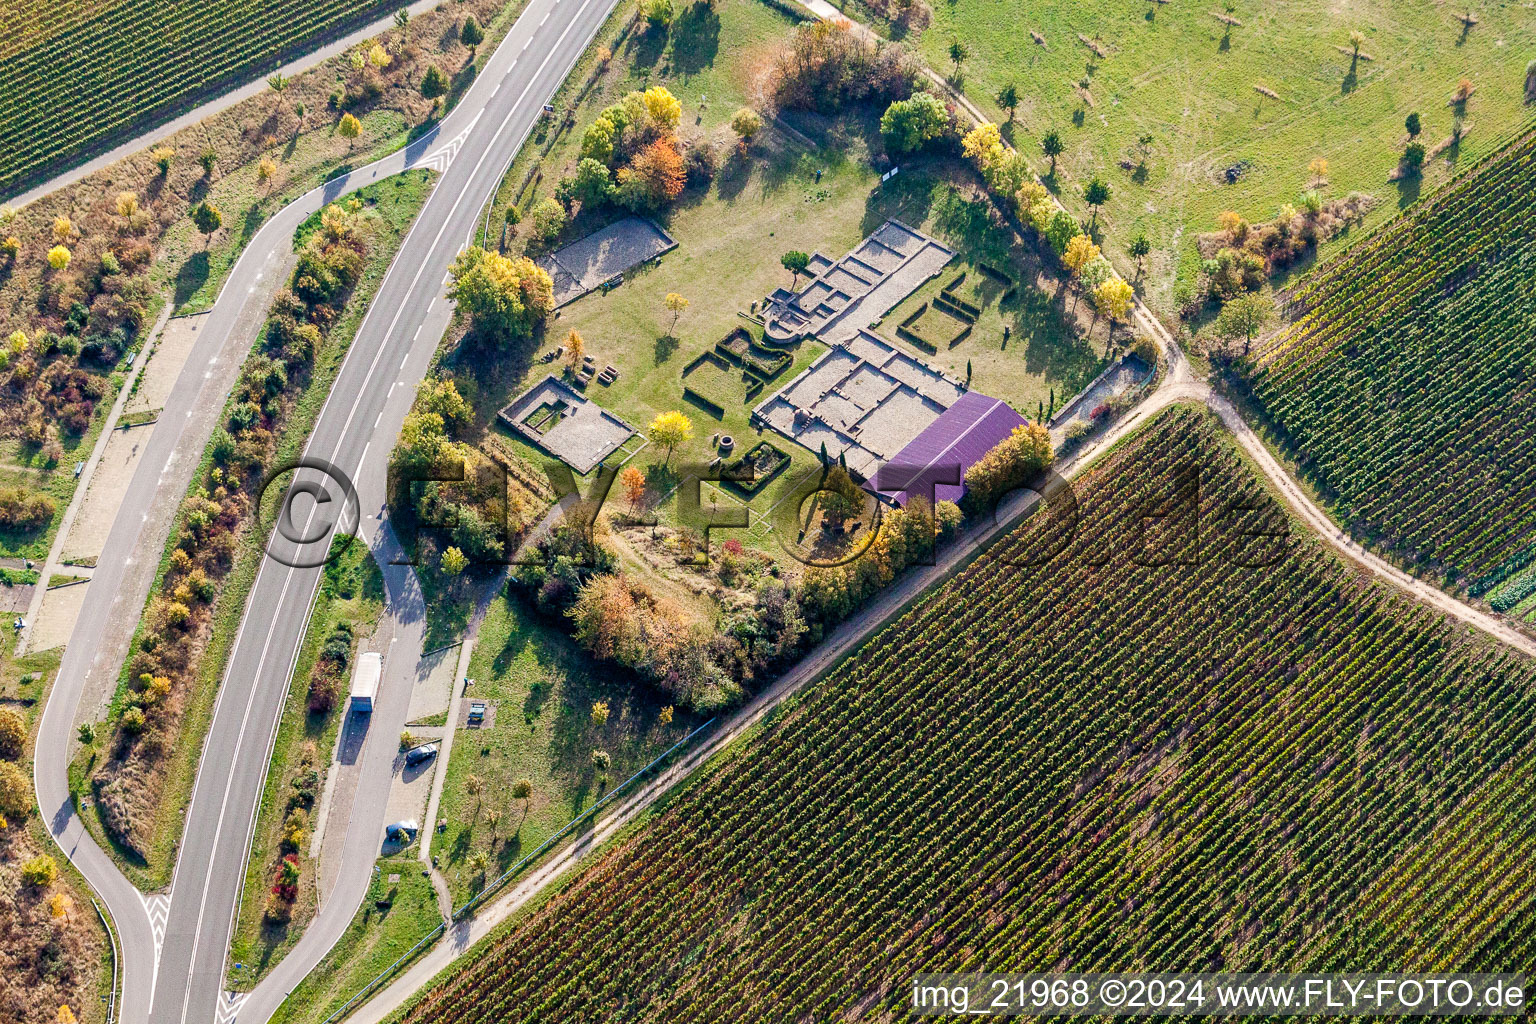 Luftbild von Grundmauern der römischen Villa Rustica Wachenheim in Wachenheim an der Weinstraße im Bundesland Rheinland-Pfalz, Deutschland